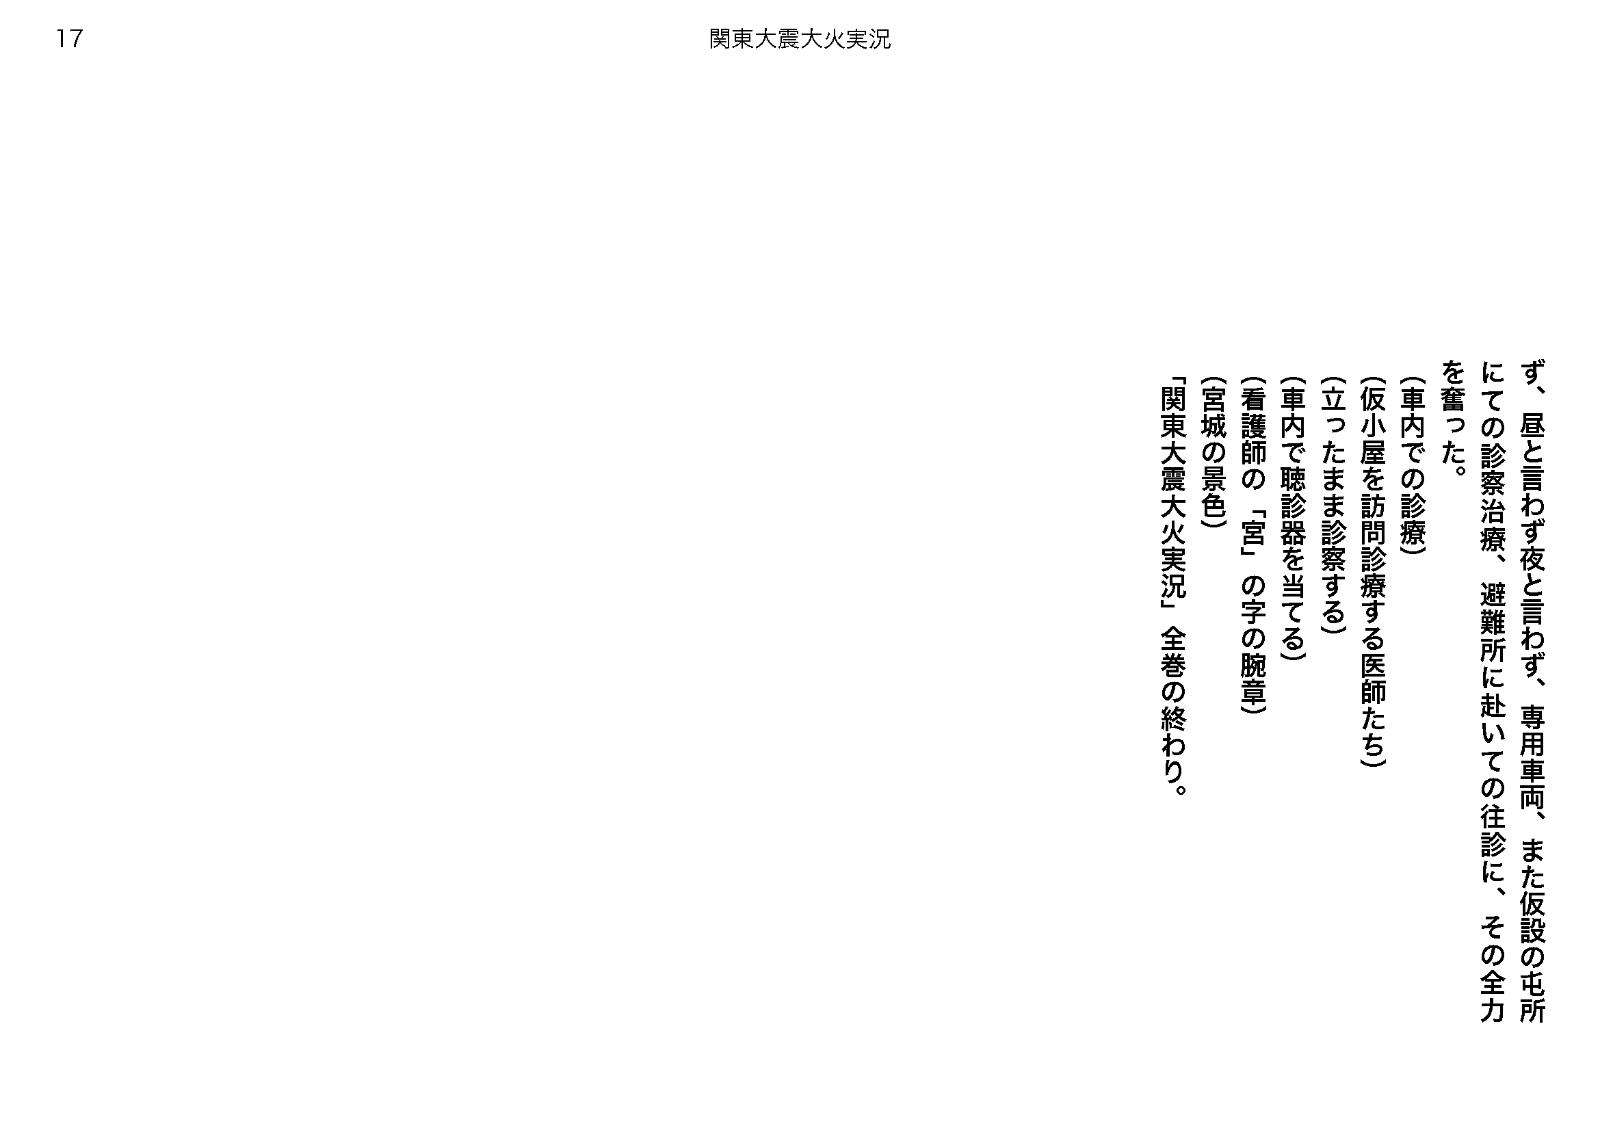 「映画『關東大震大火實況』弁士台本」（2022年） 17/17頁